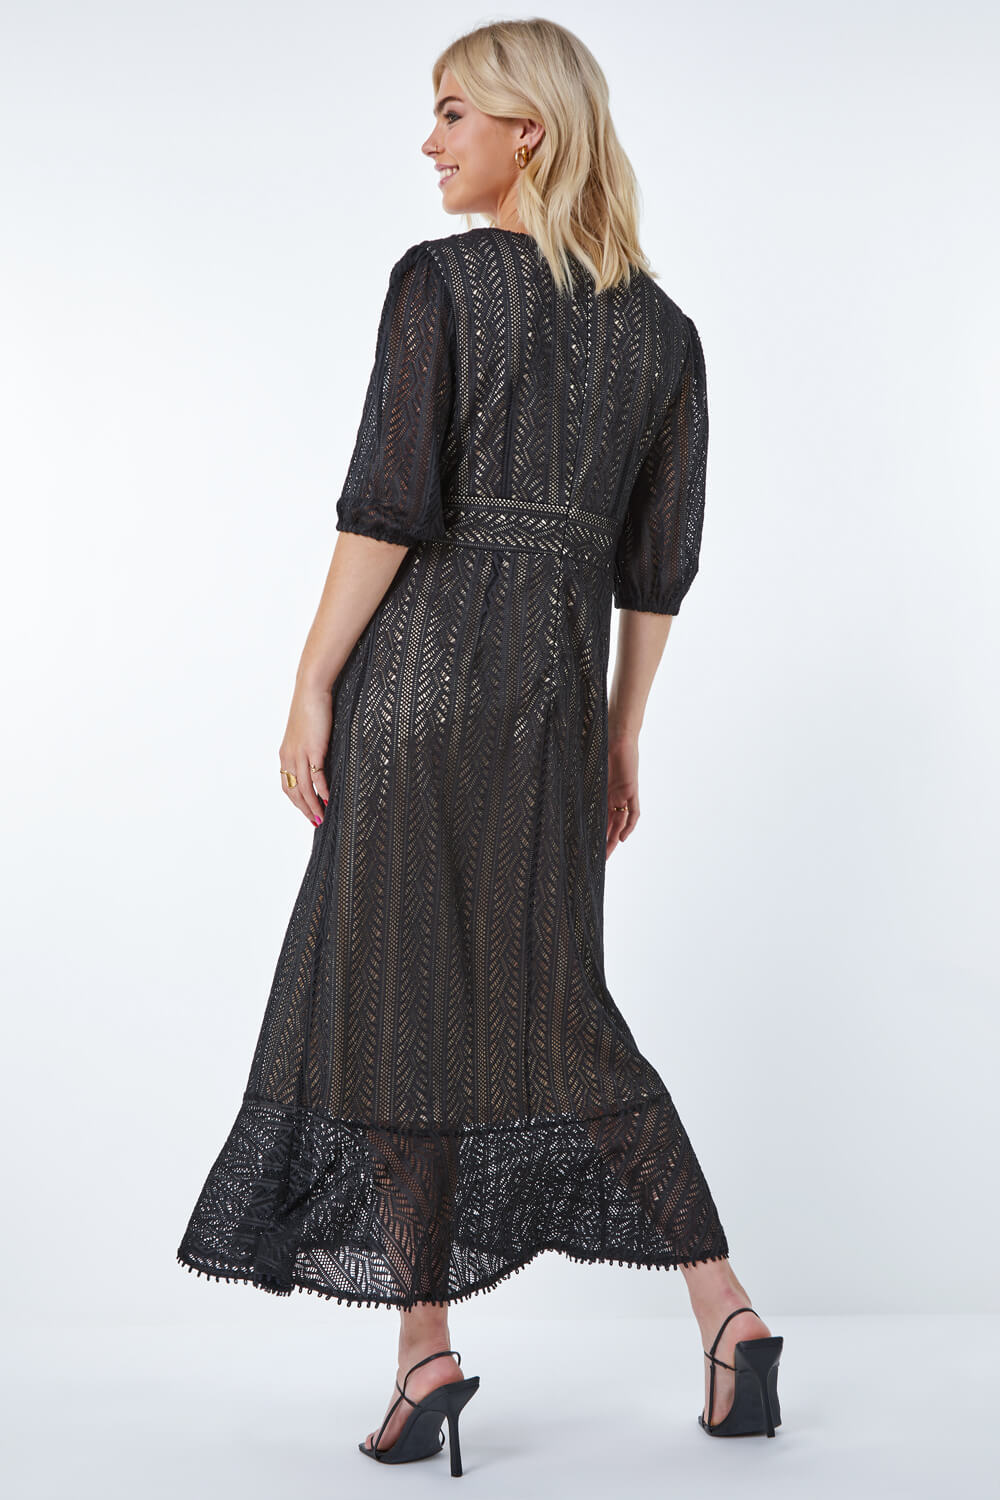 Black Stretch Lace Frill Hem Dress, Image 3 of 5